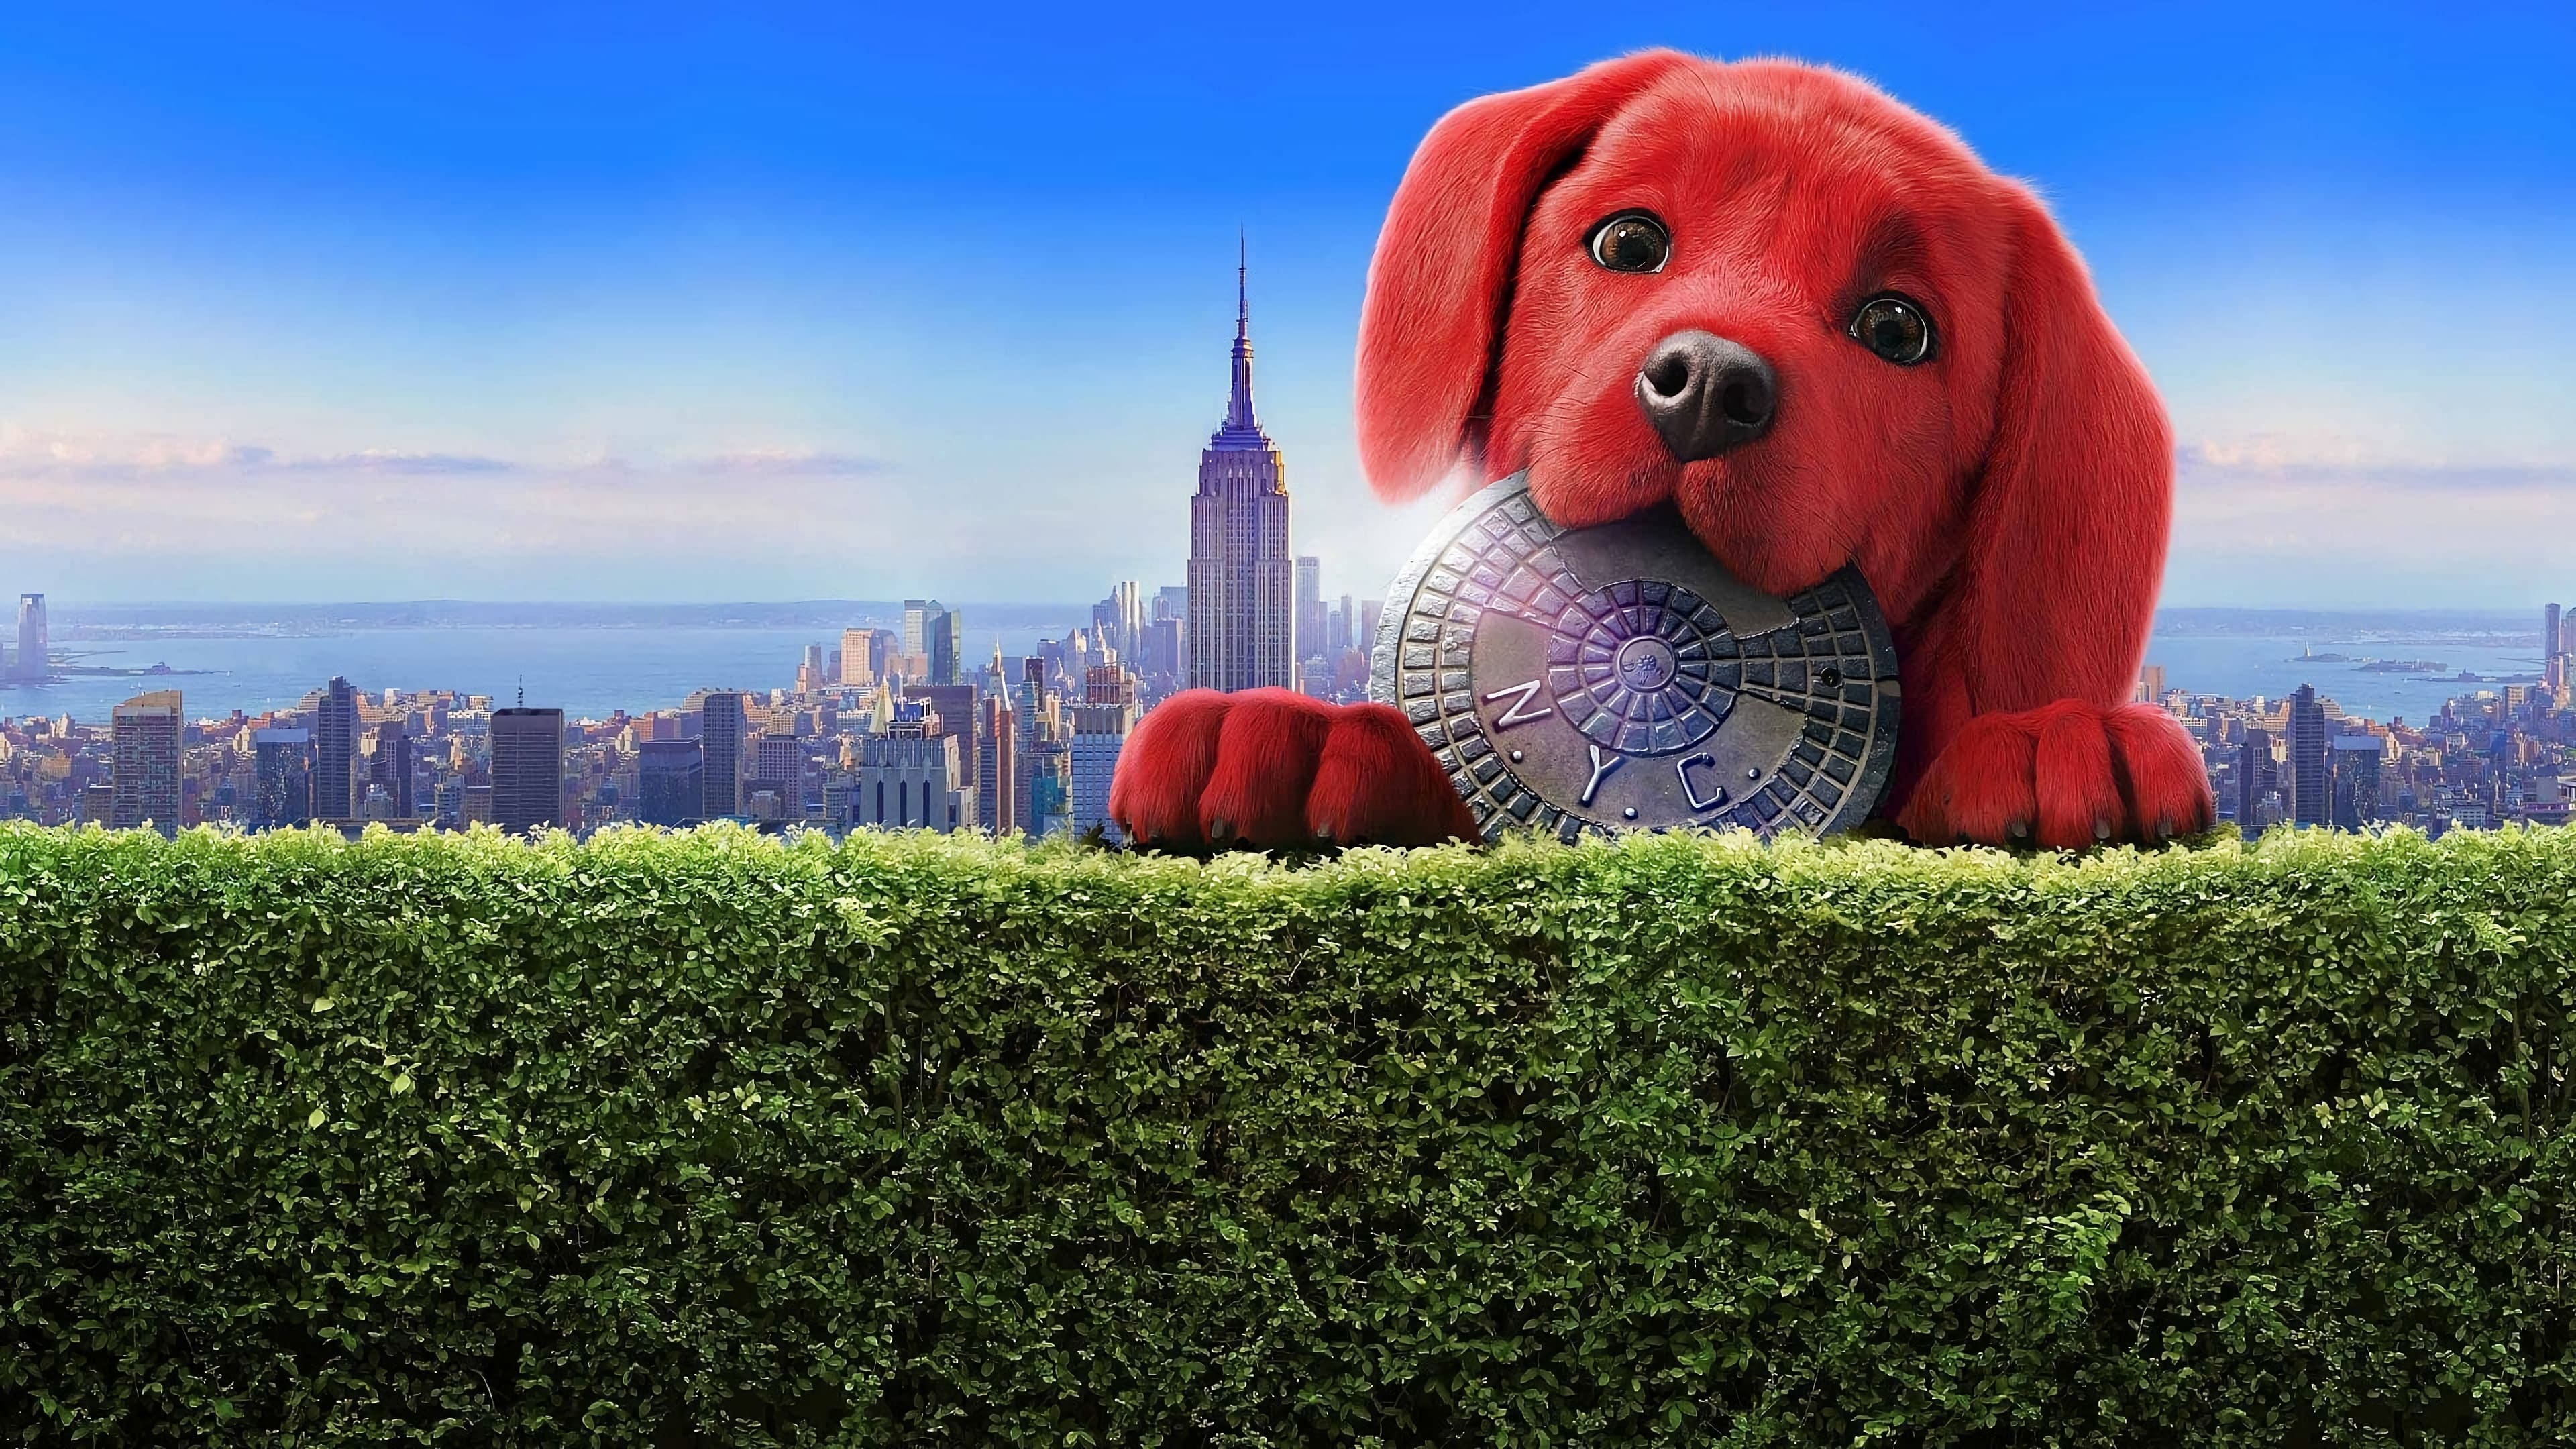 Poster Phim Clifford: Chú Chó Đỏ Khổng Lồ (Clifford the Big Red Dog)